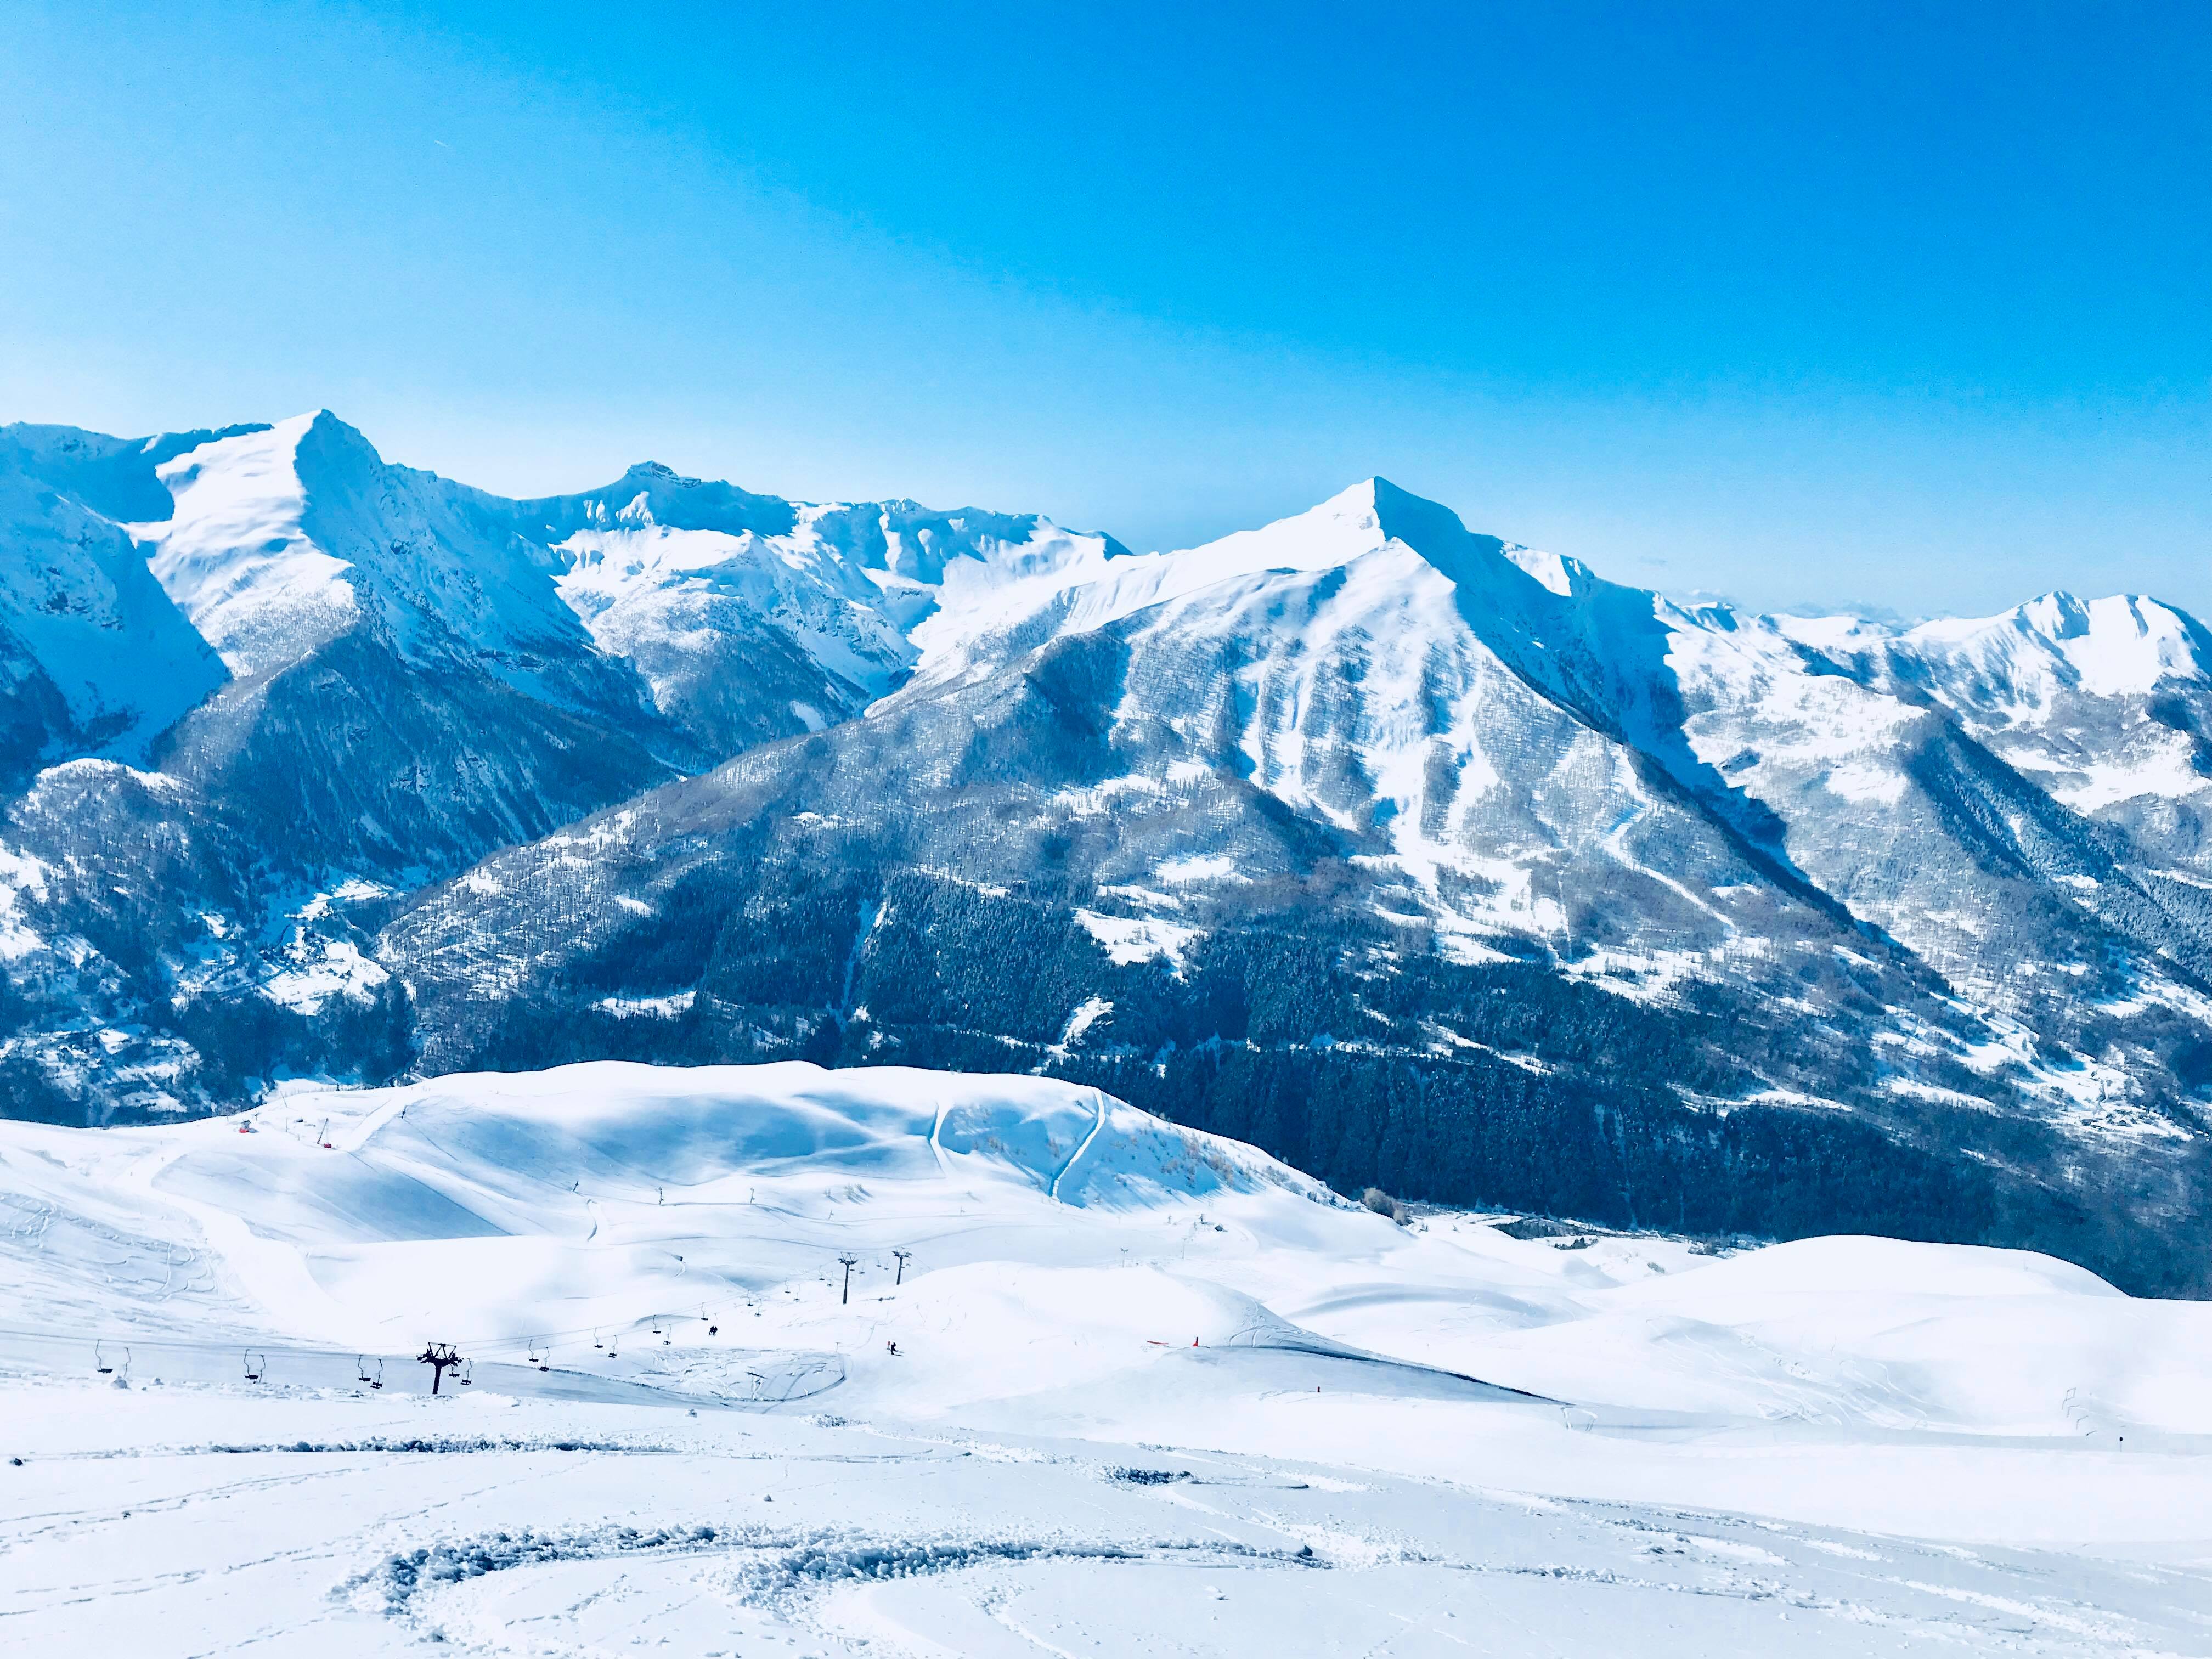 Magnifique vue de la Station de ski d'Orcières Merlette